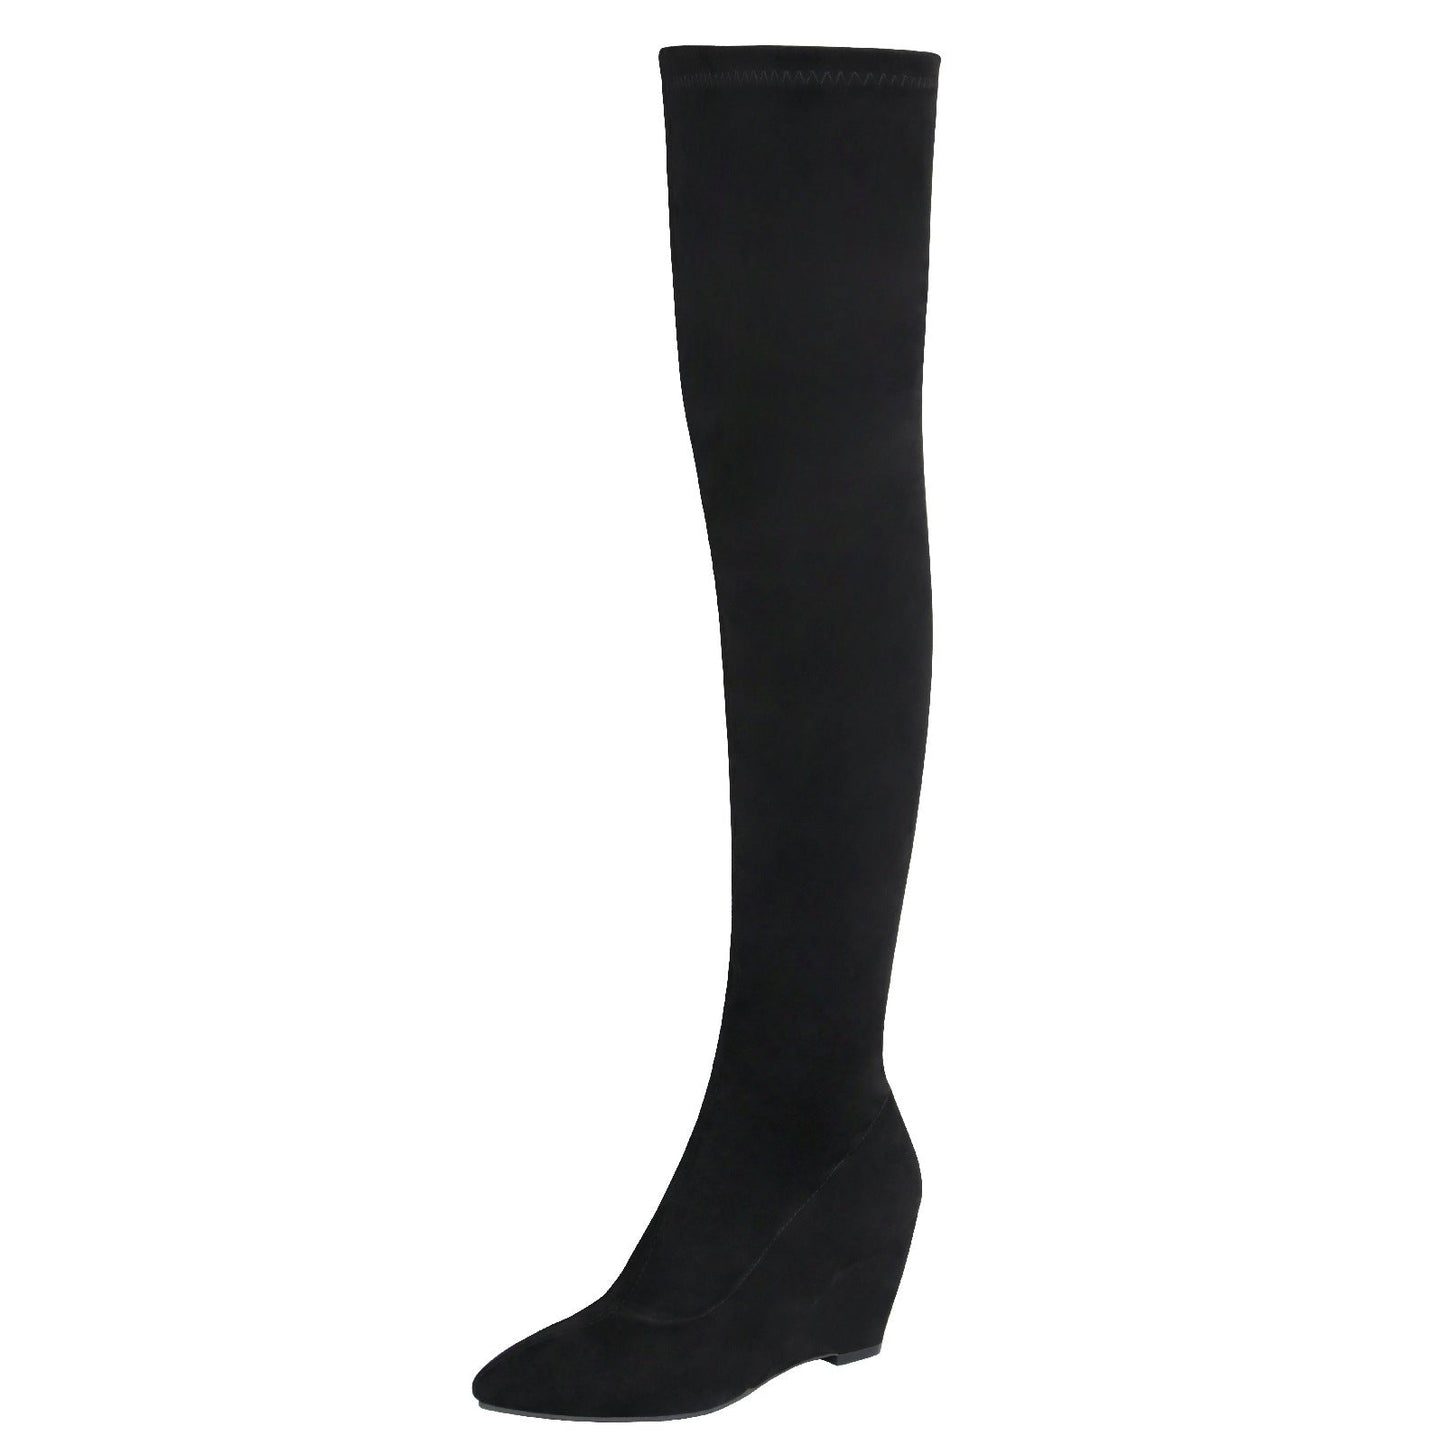 ZIERSO Women Black Pointed Toe Side Zipper Wedge Heel